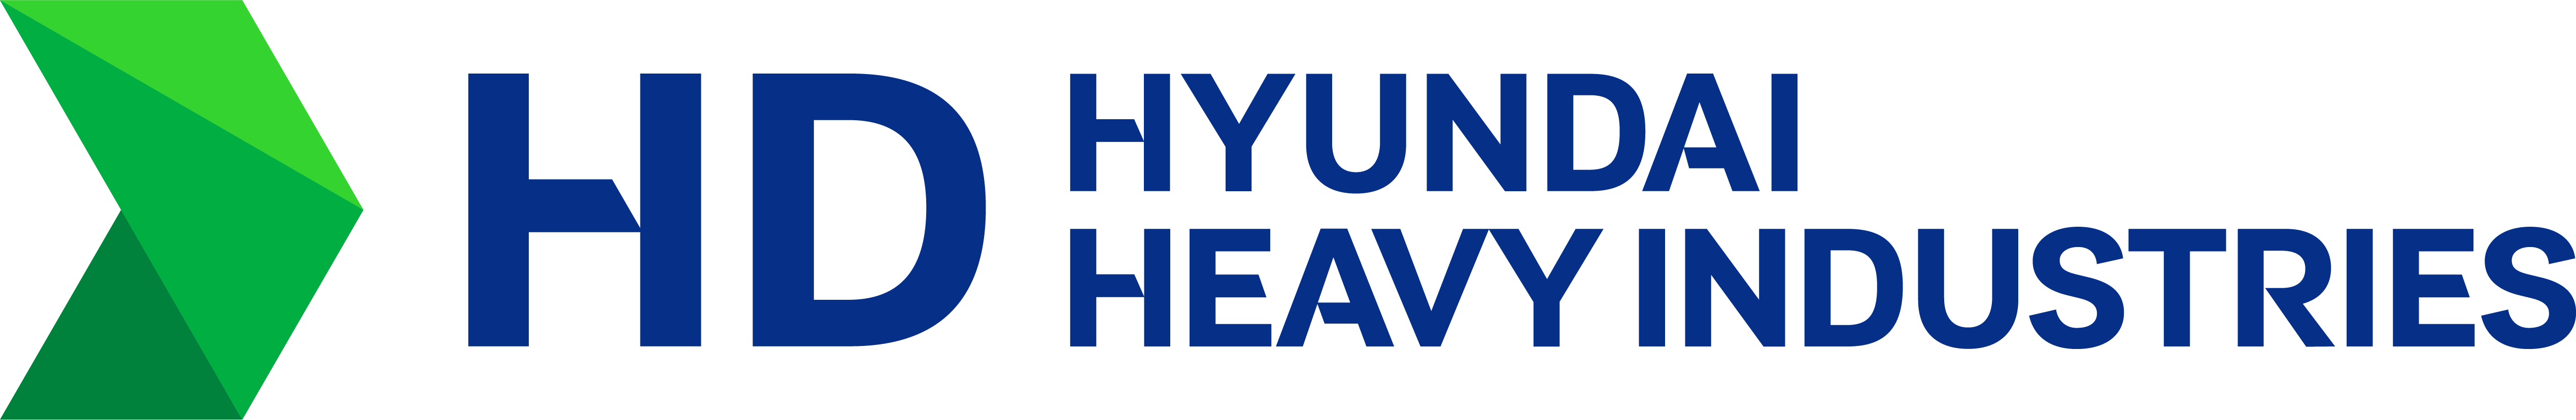 HHI Logo